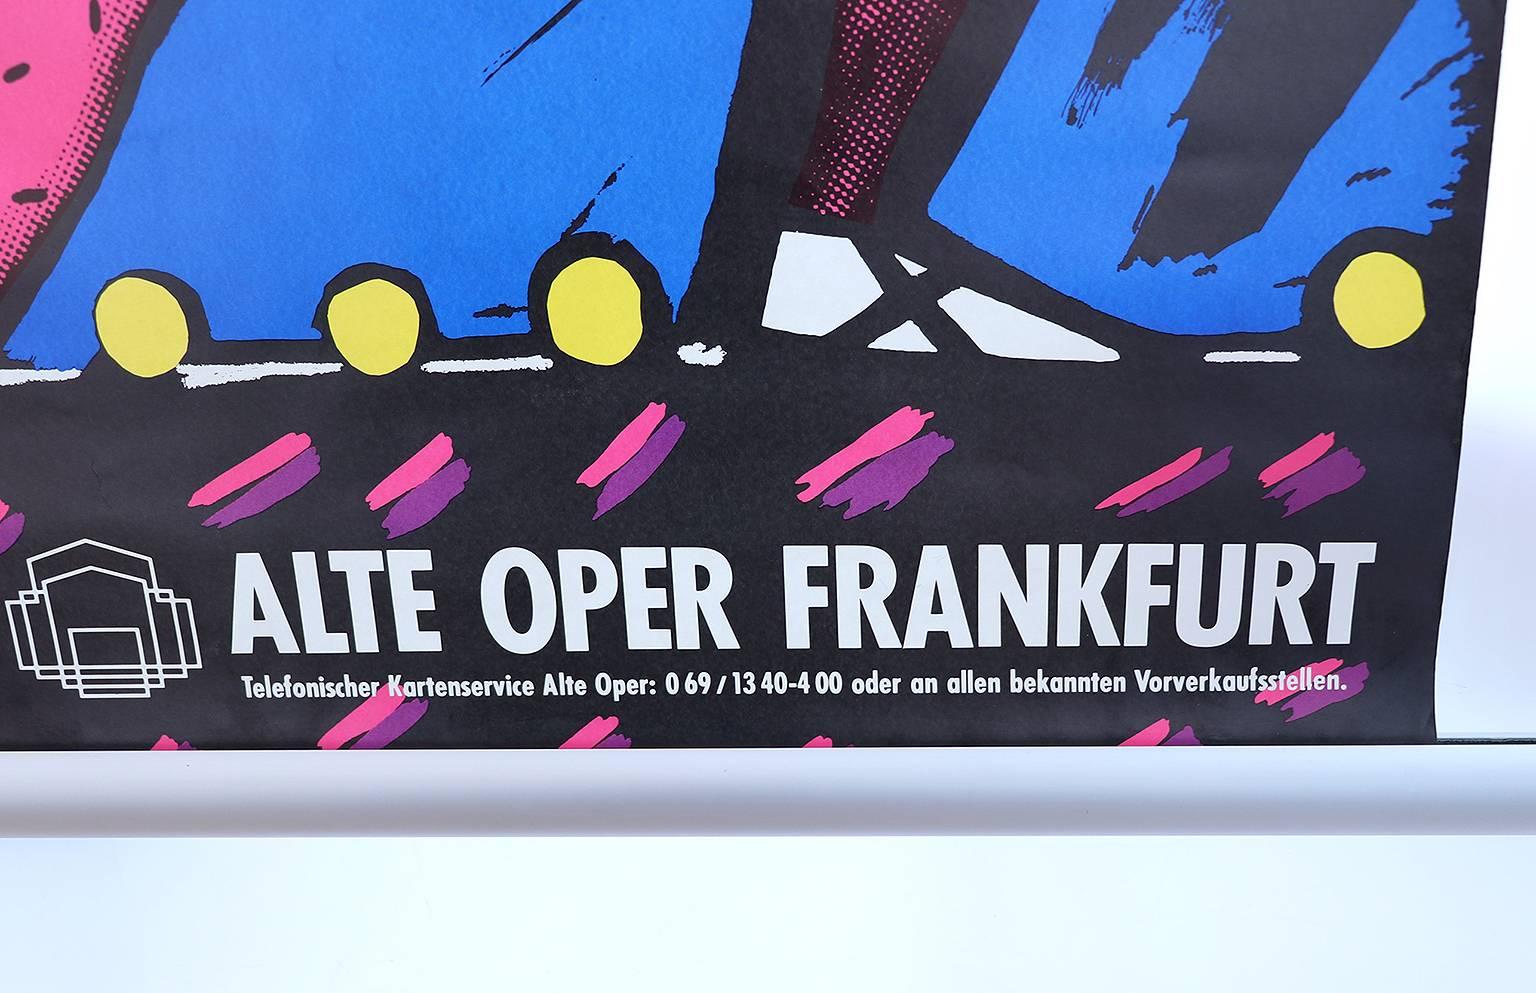 Dance Dance Dance Dance - une affiche allemande de l'Alte Oper Franfurt, 1991.
Non encadré, n'a pas été plié, enroulé.
Taille DIN A1 : 594 x 841 mm
Deux affiches identiques sont disponibles. 